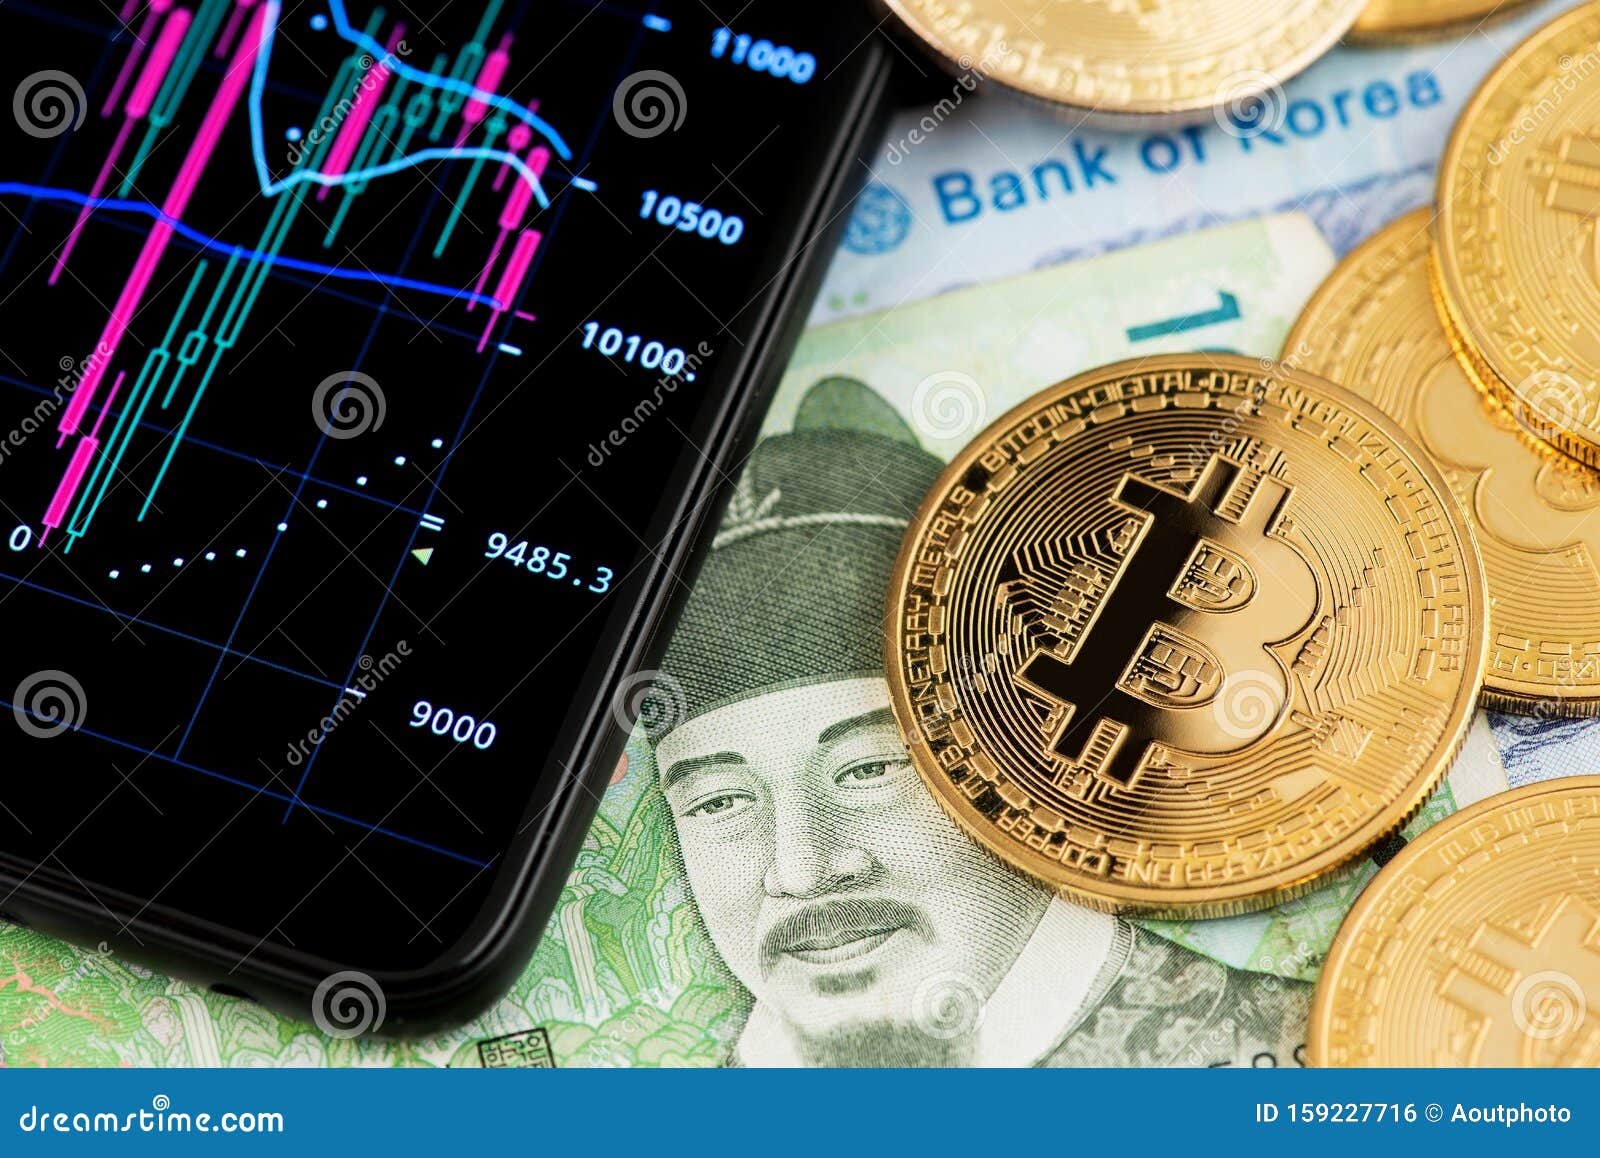 Bitcoin este din nou în scădere puternică după ce Coreea de Sud | solitaire-online.ro